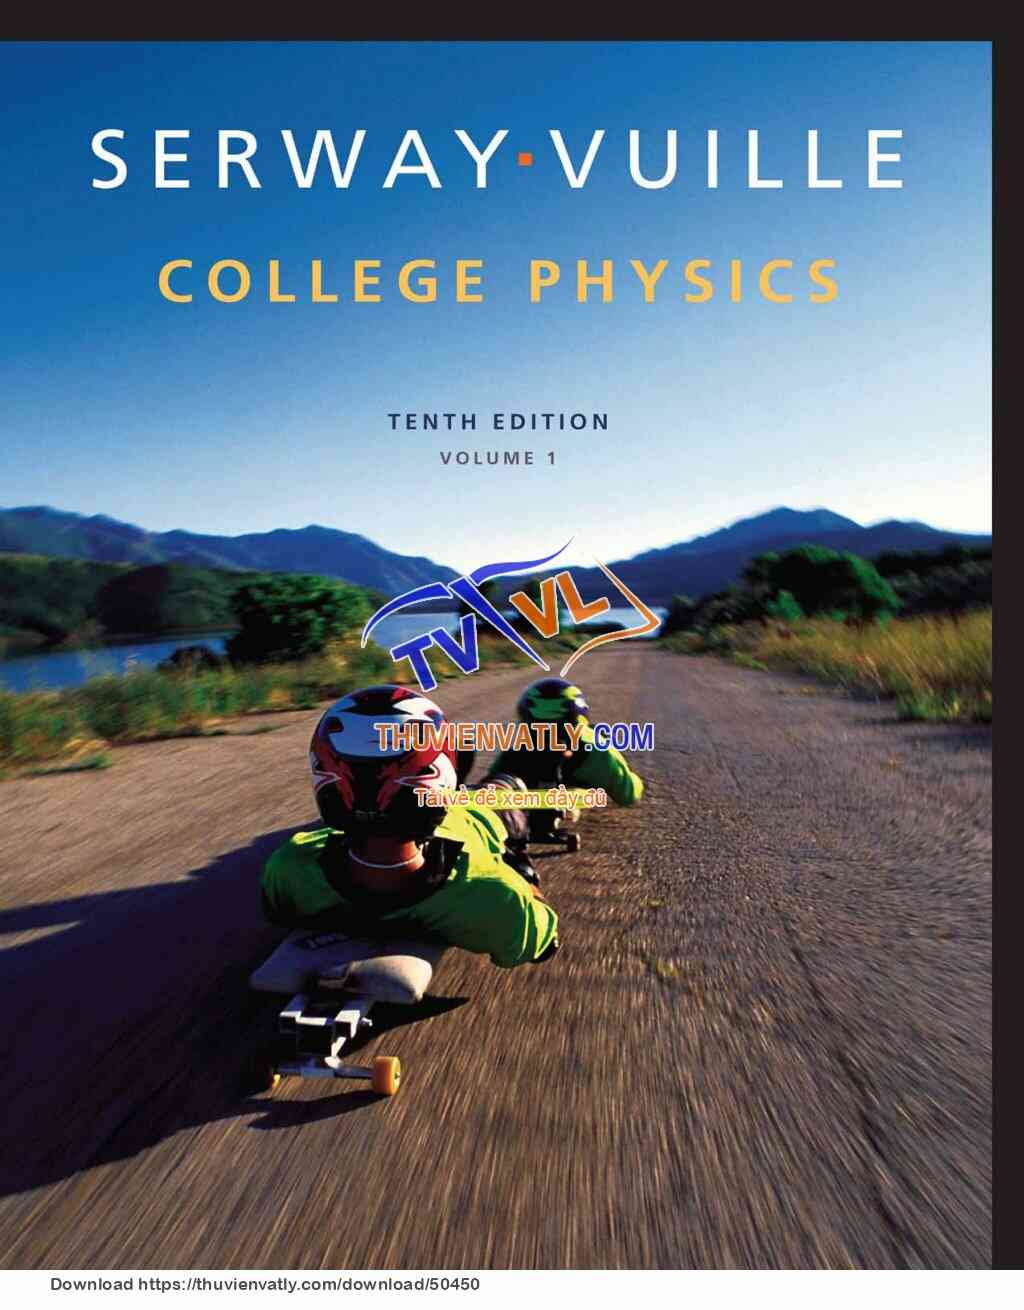 College Physics - Serway & Vuille